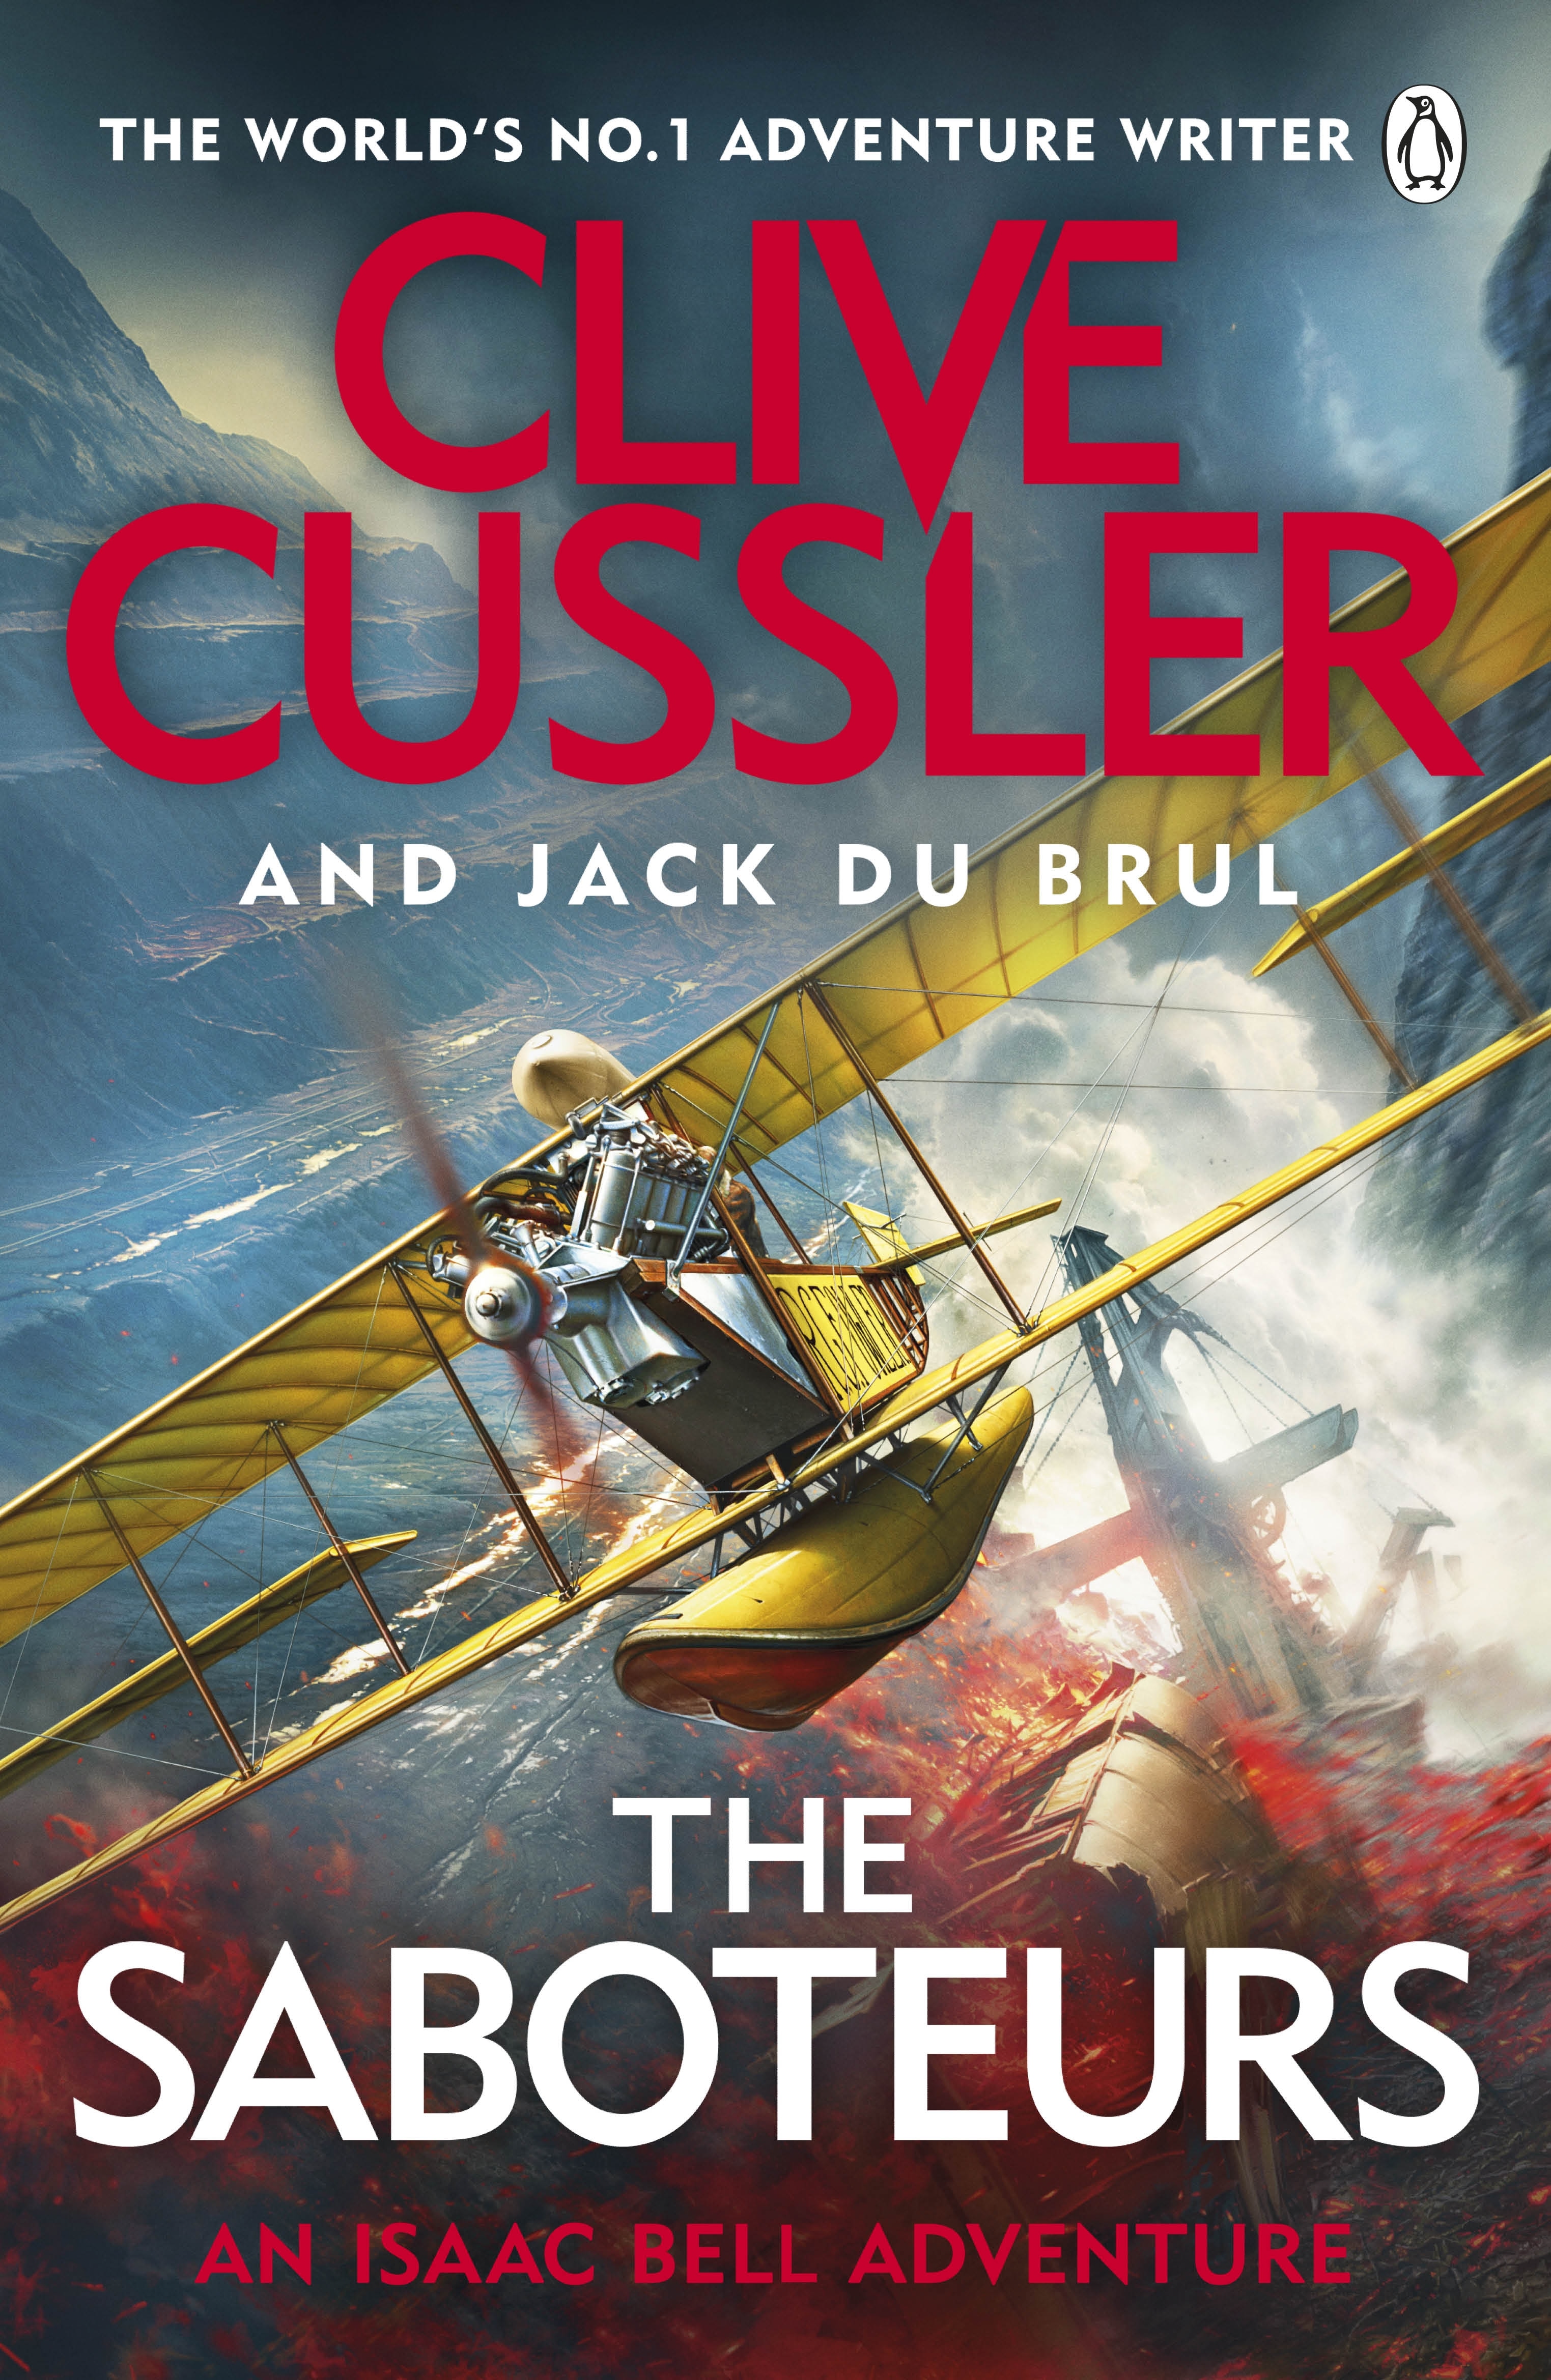 Book “The Saboteurs” by Clive Cussler, Jack du Brul — April 28, 2022